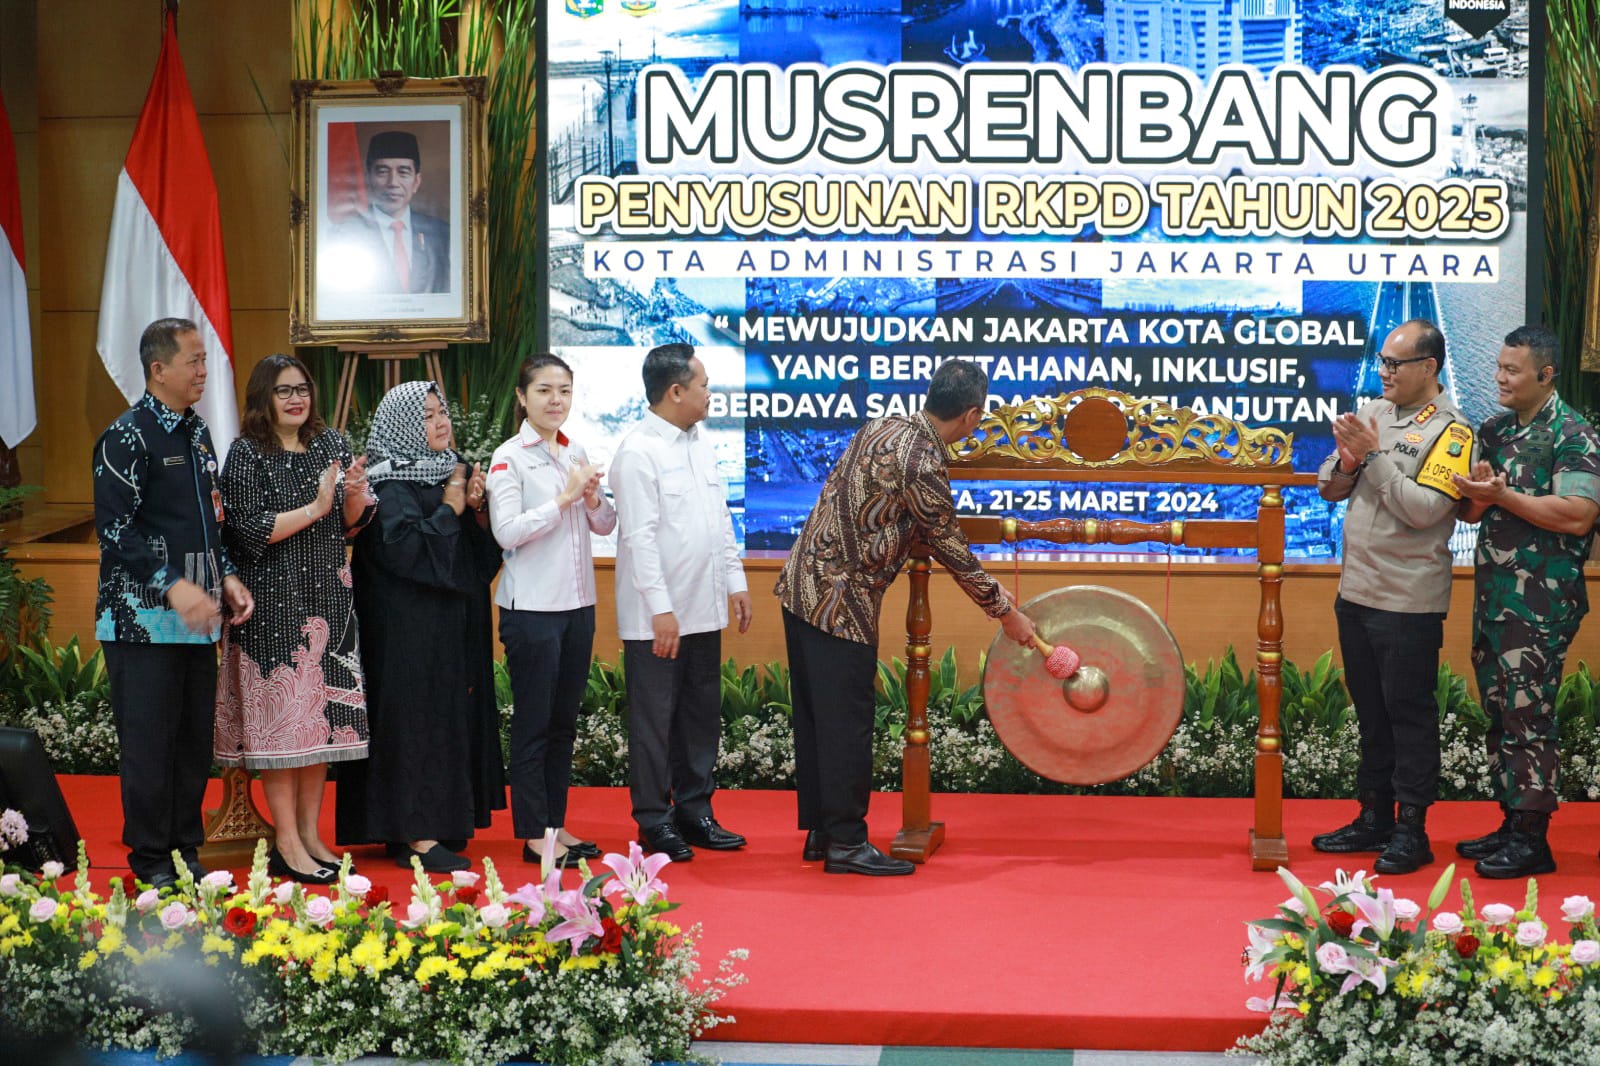 Heru Budi Hartono Buka Musrenbang Tingkat Kota Administrasi Jakarta Utara Tahun 2024